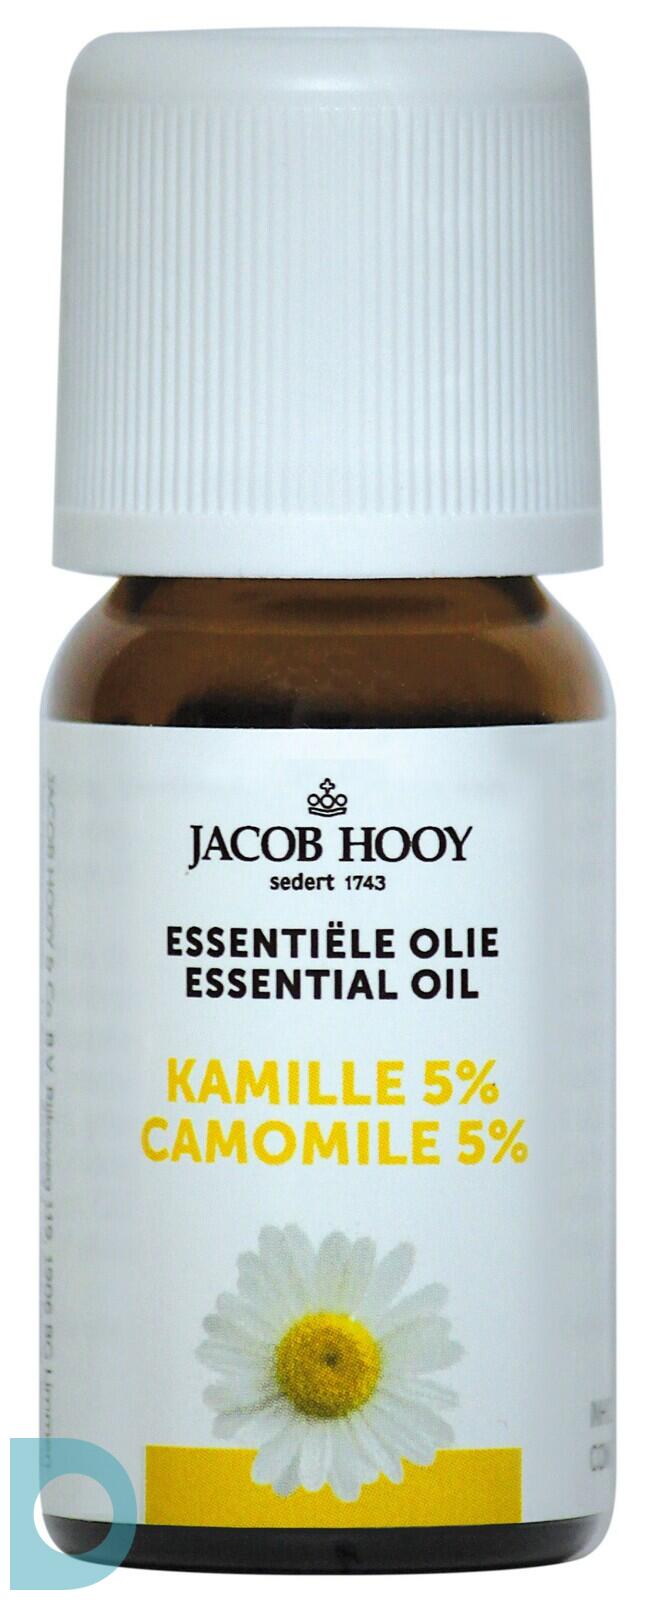 Hooy Essentiële Olie Kamille 5% | De